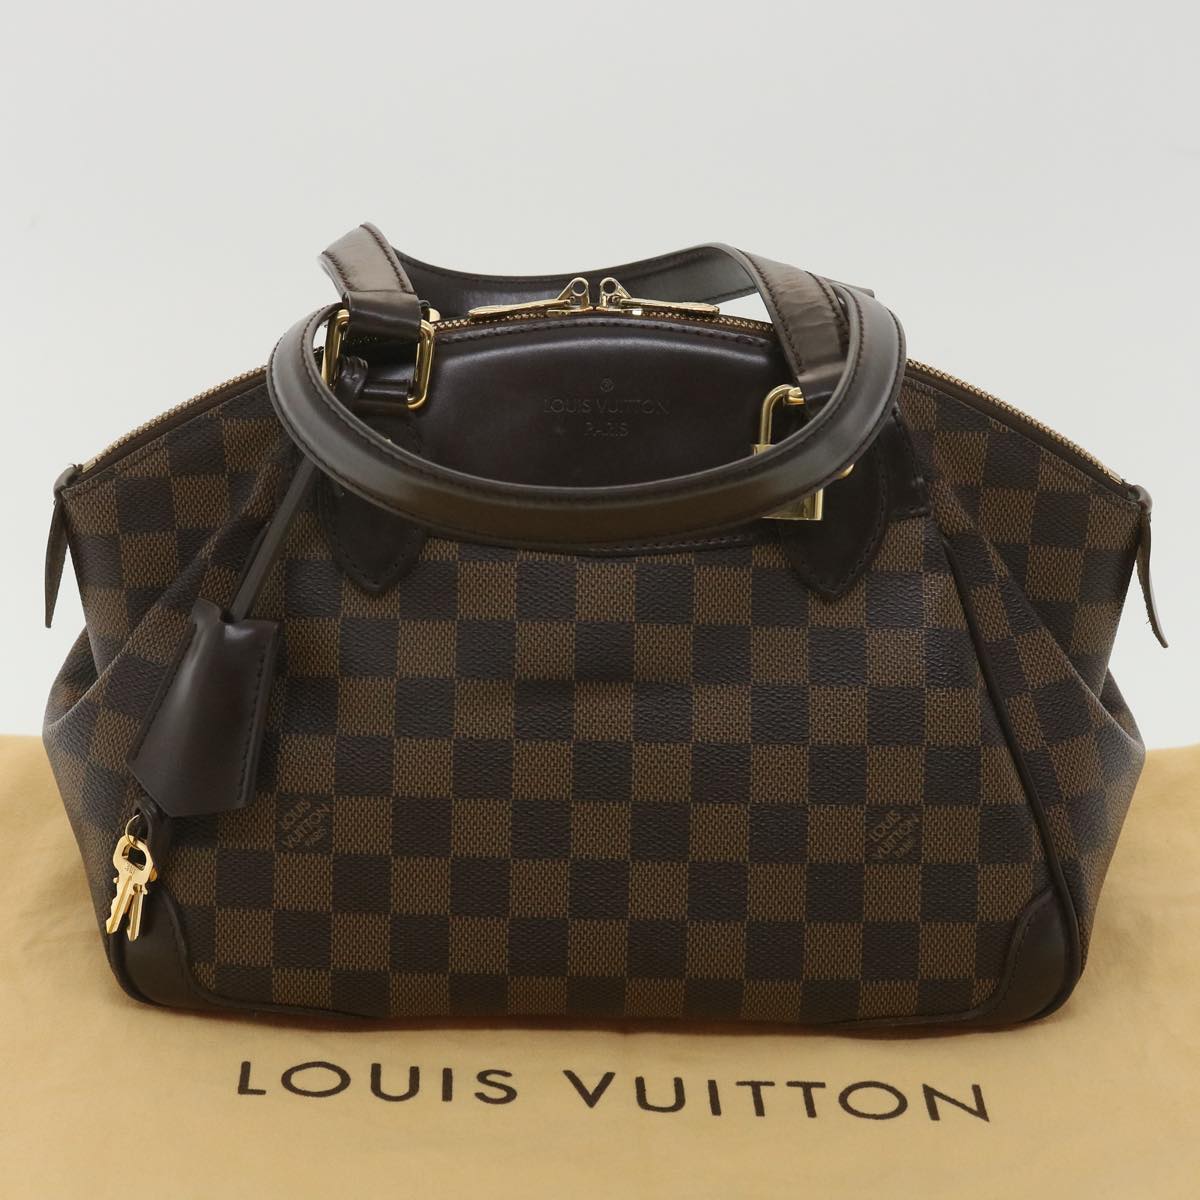 LOUIS VUITTON Damier Ebene Verona PM Hand Bag N41117 LV Auth 37851